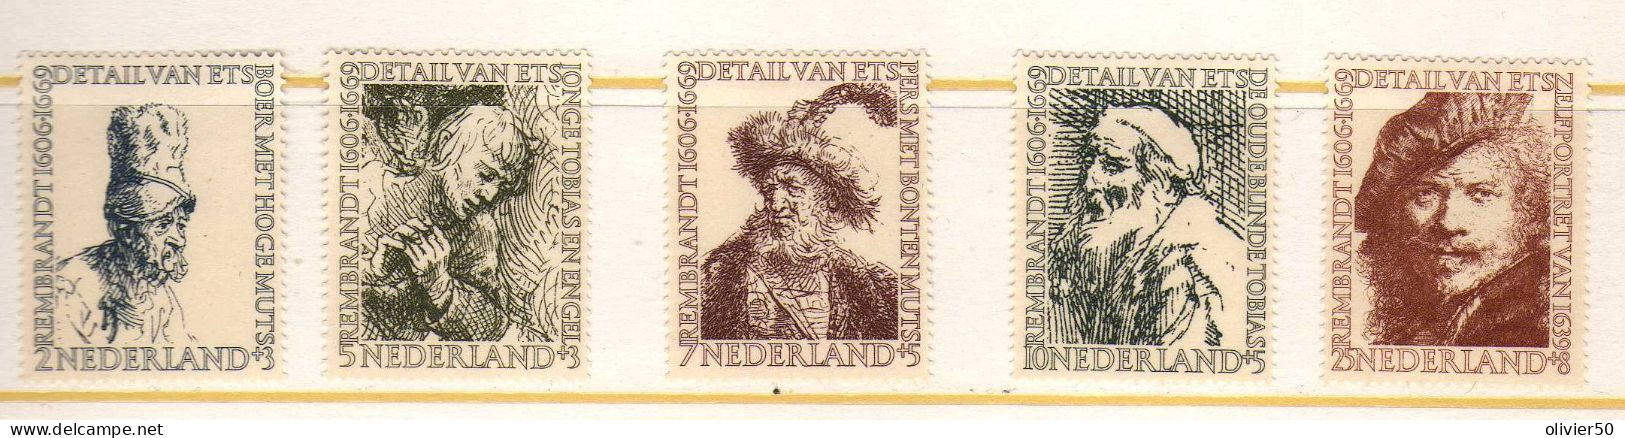 Pays-Bas -1956 - Rembrandt -  Neufs* - MLH - Ungebraucht